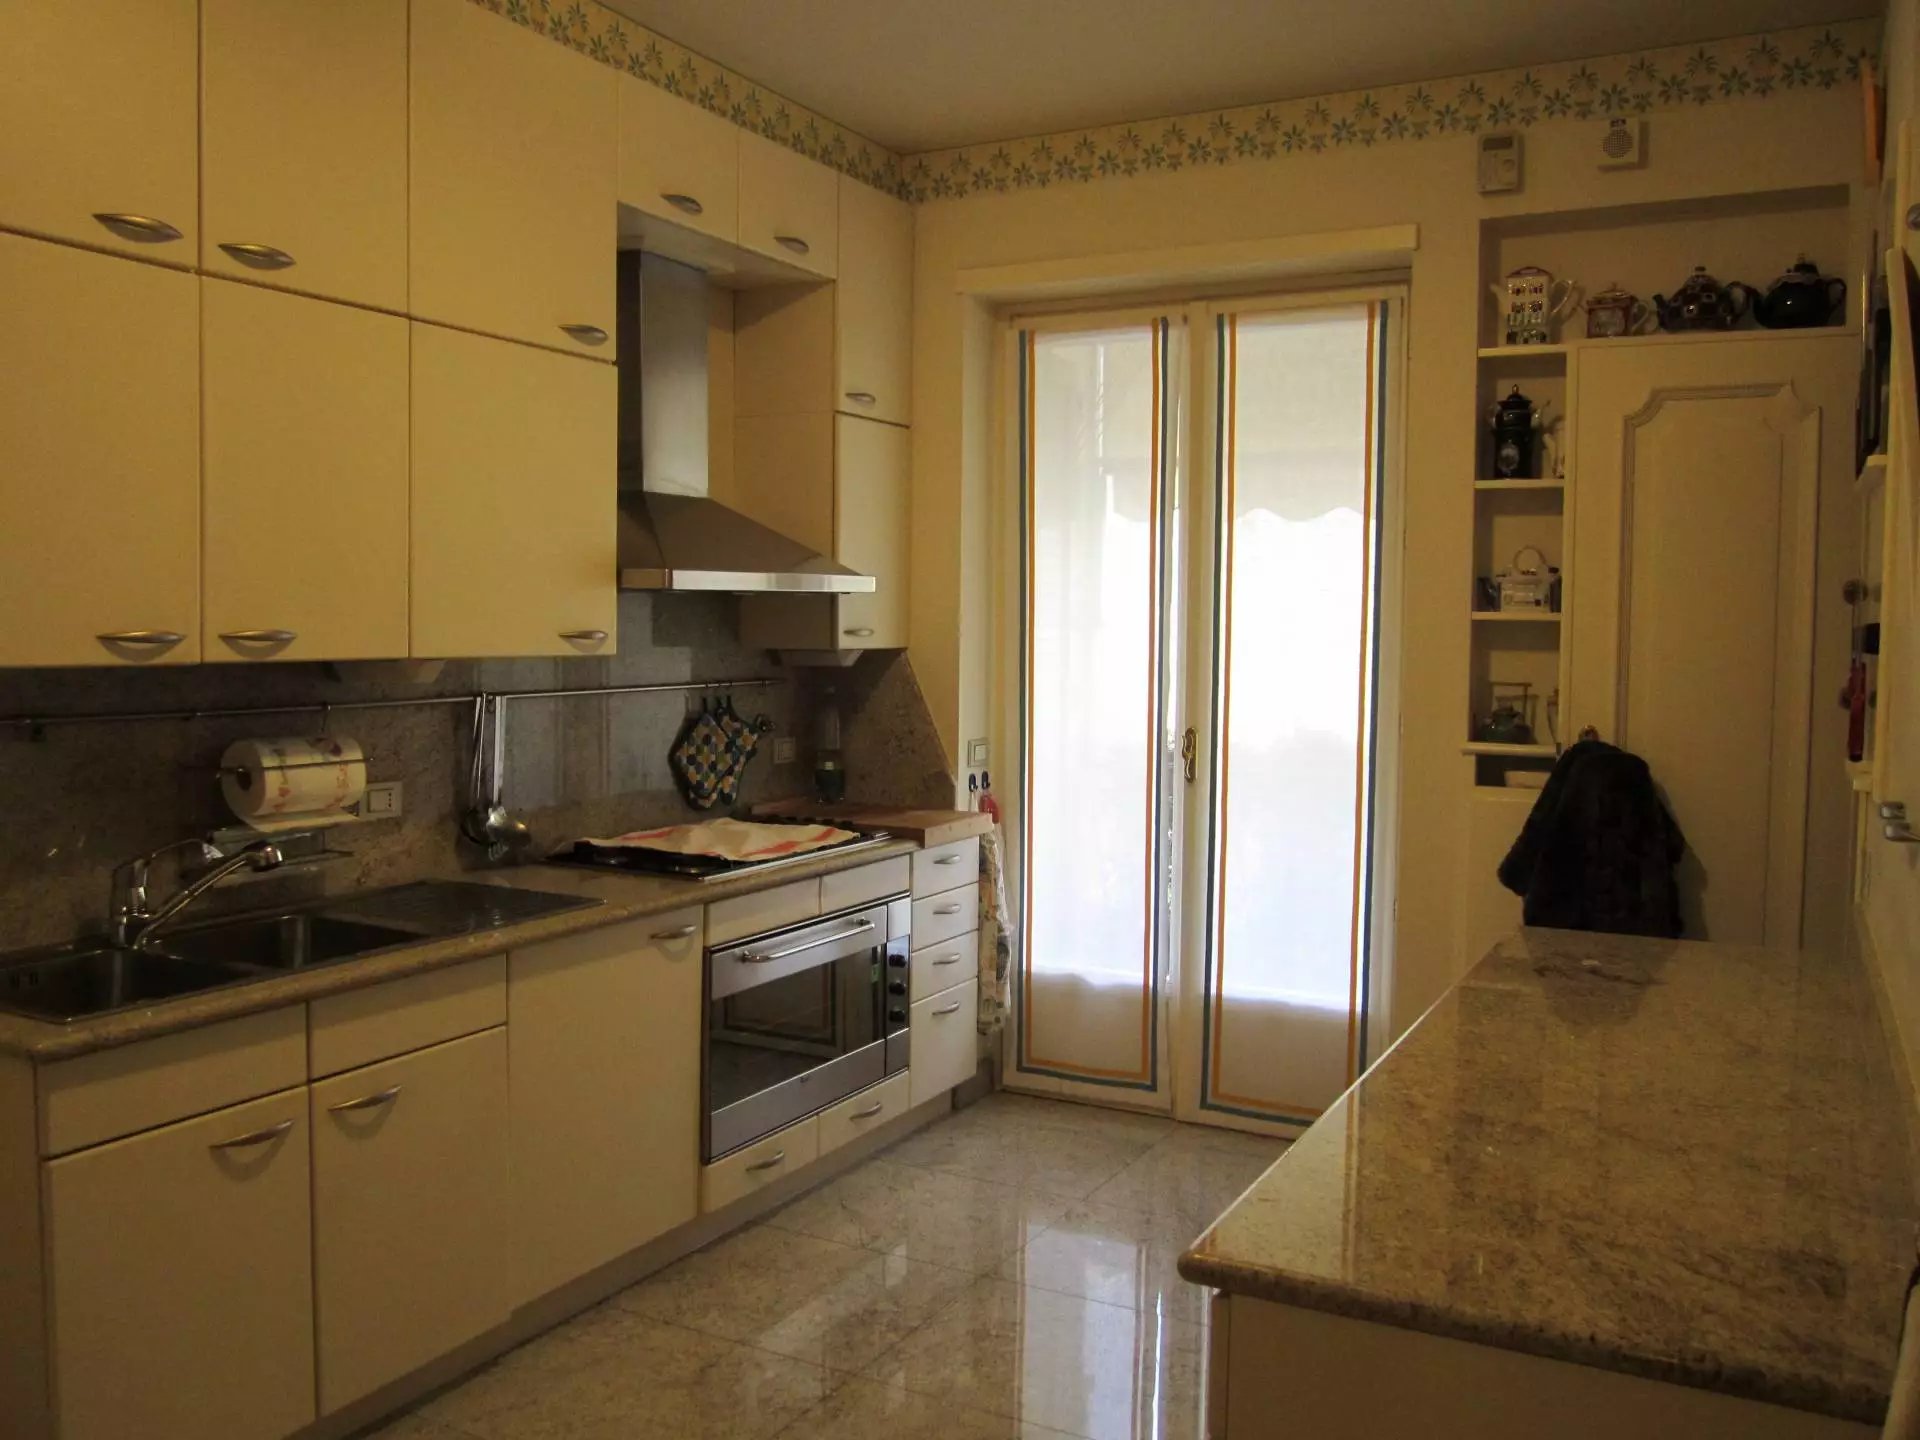 Sale Apartment villa - Sanremo - Italy